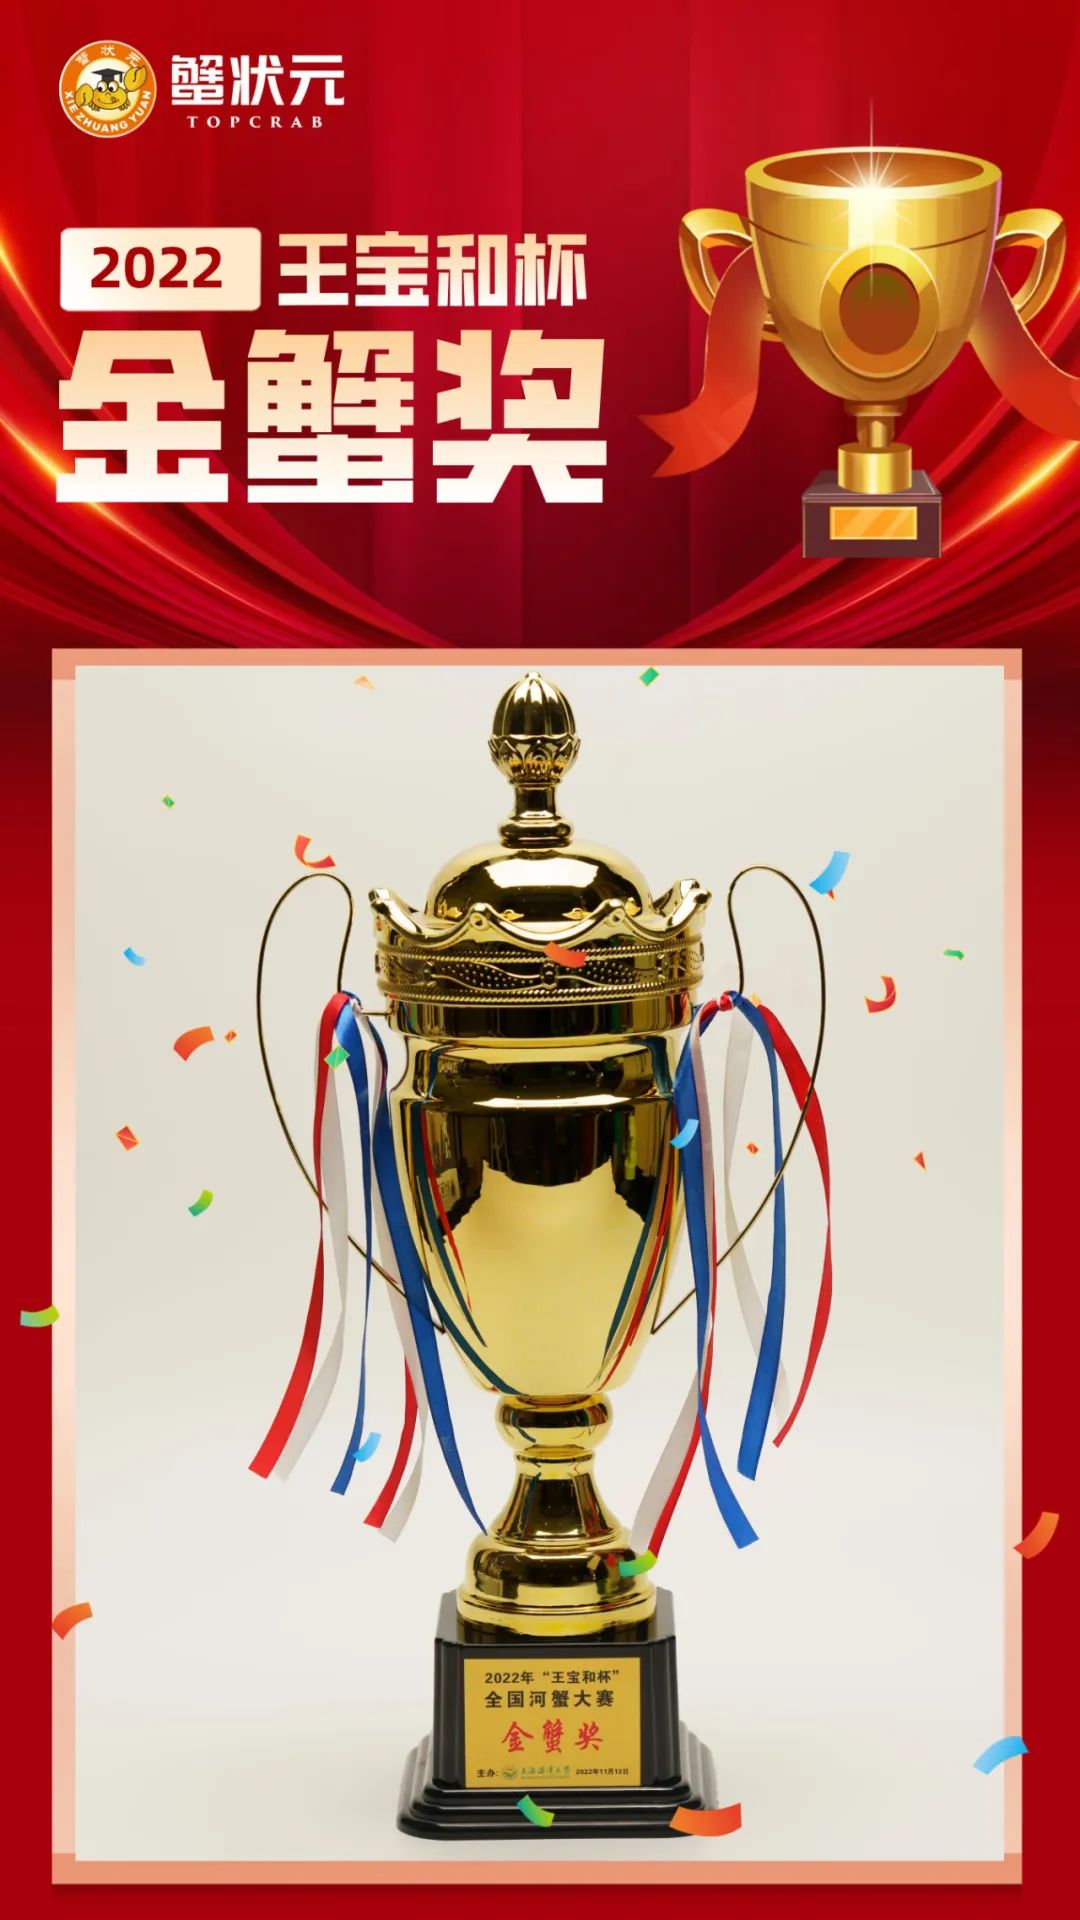 上海海洋大学第十六届蟹文化节暨2022年“王宝和杯”5